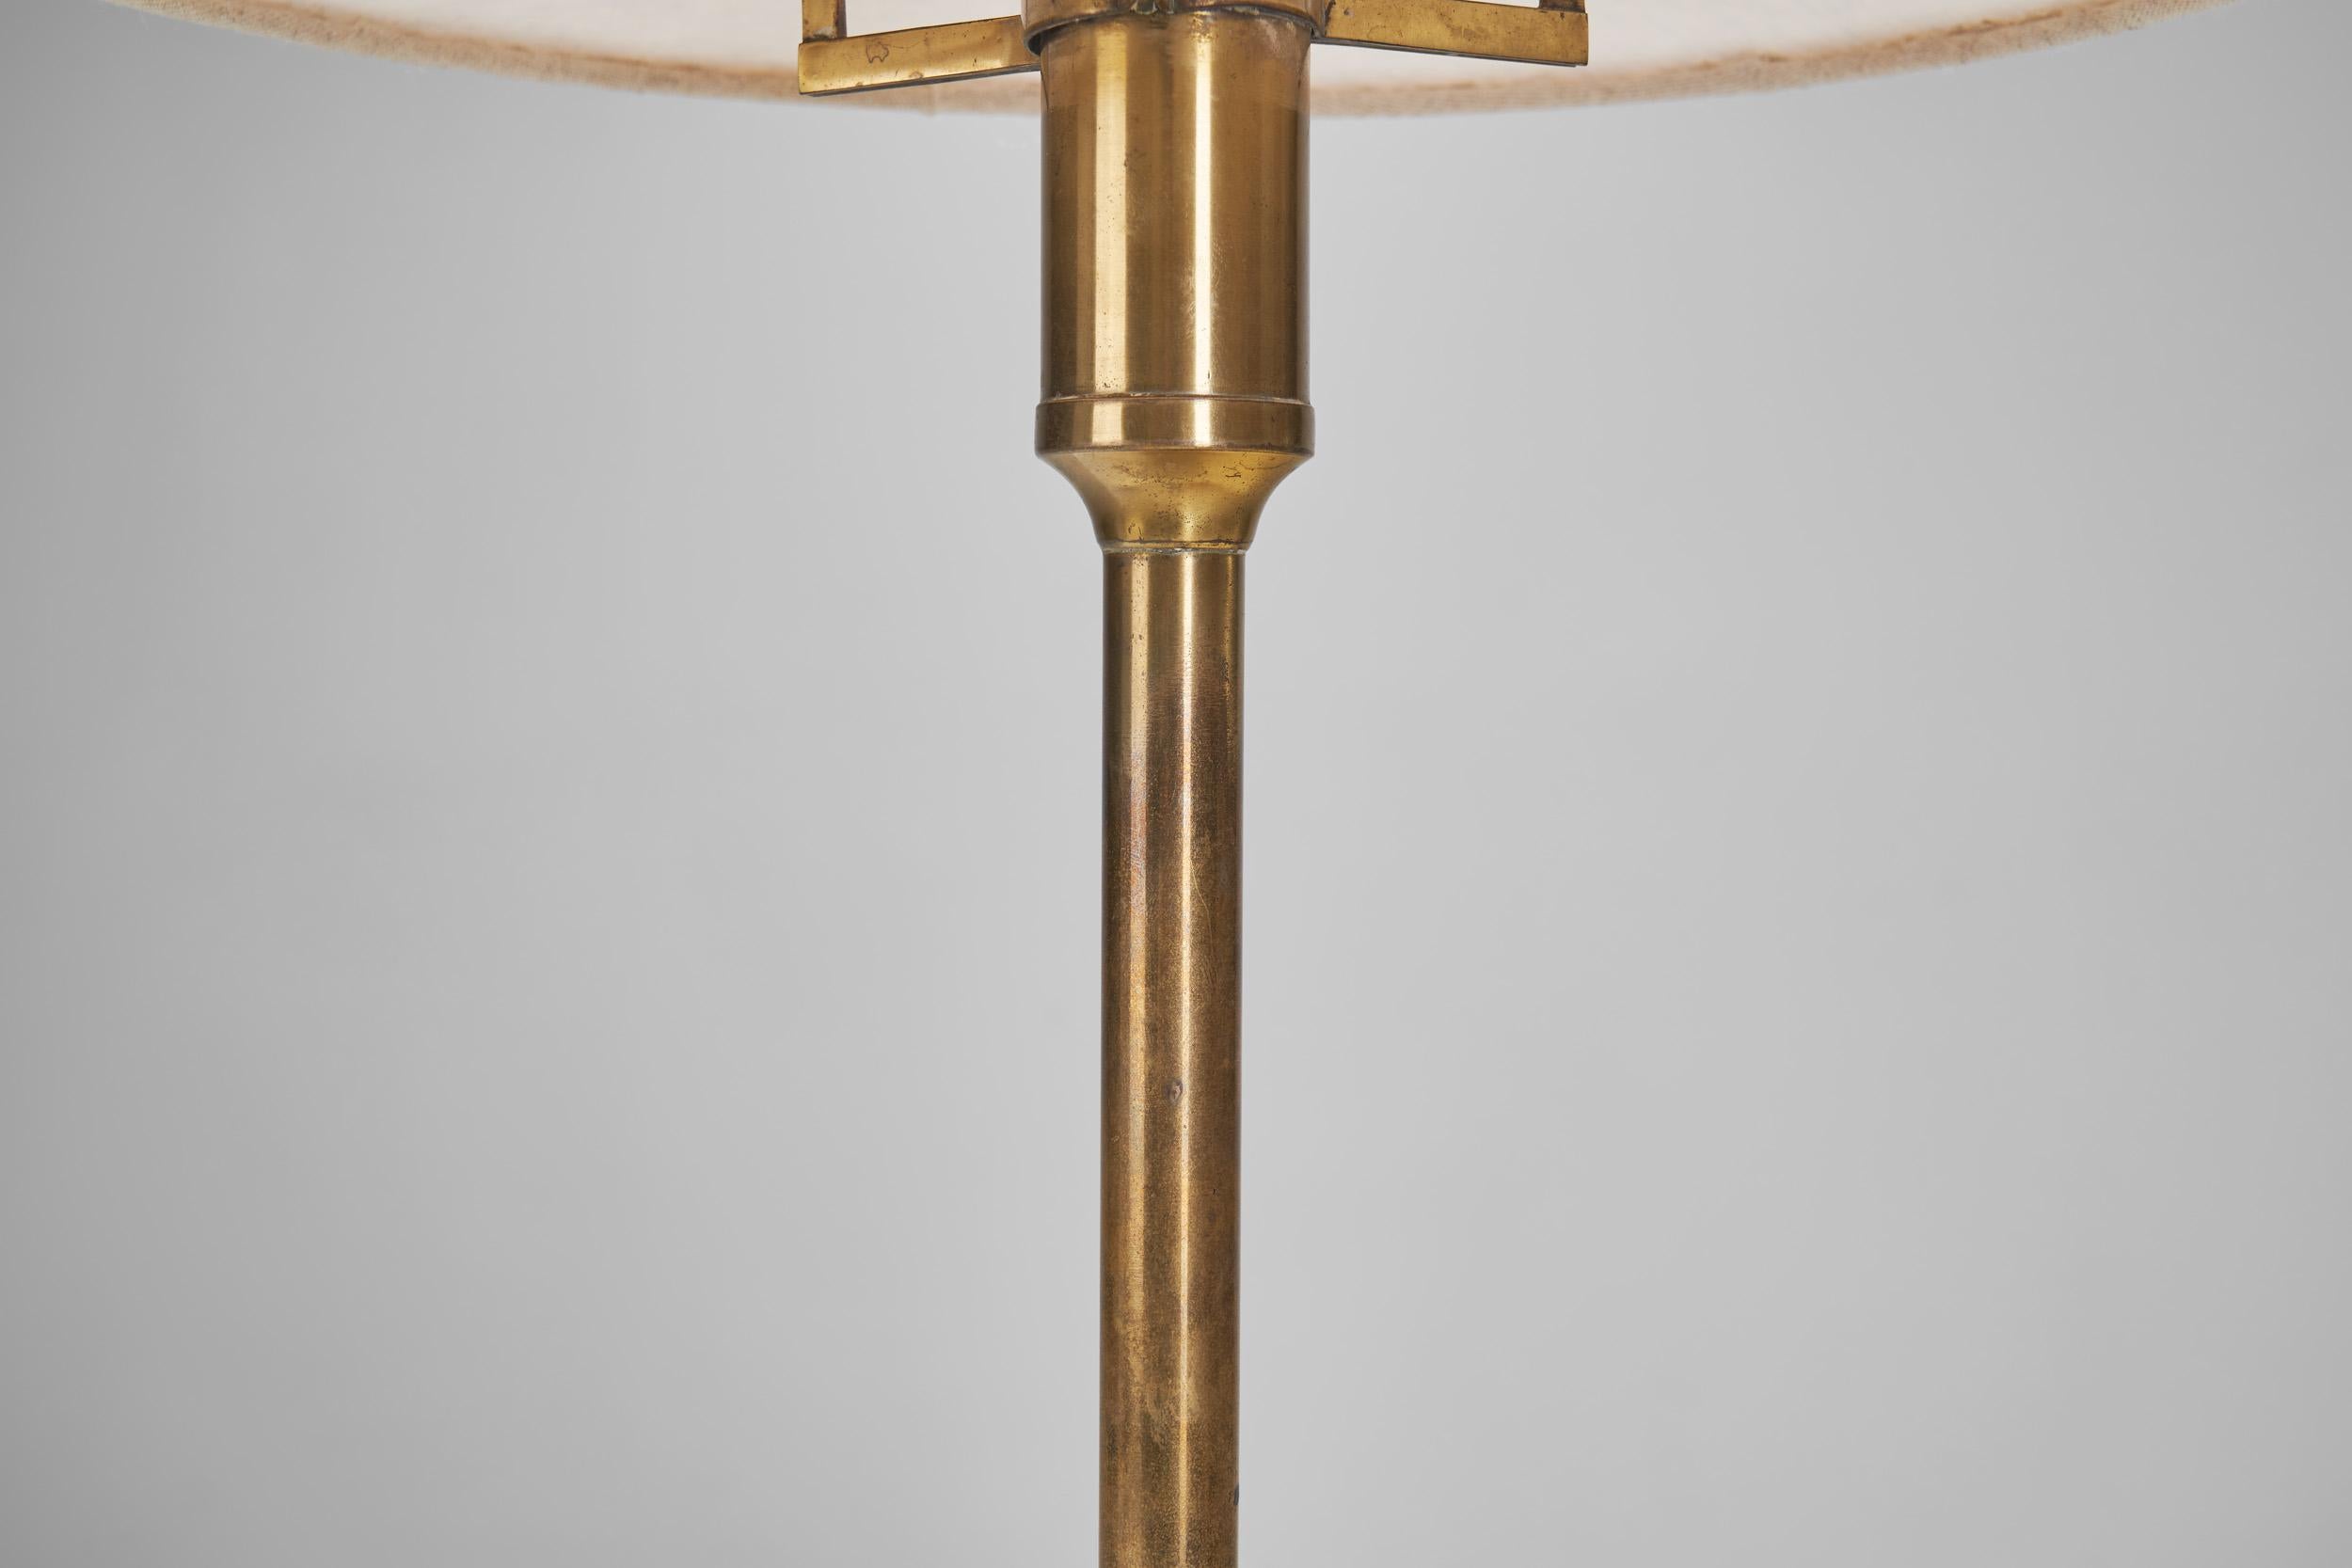 Niels Rasmussen Thykier “Kongelys T3” Table Lamp for Fog & Mörup, Denmark 1940s For Sale 10